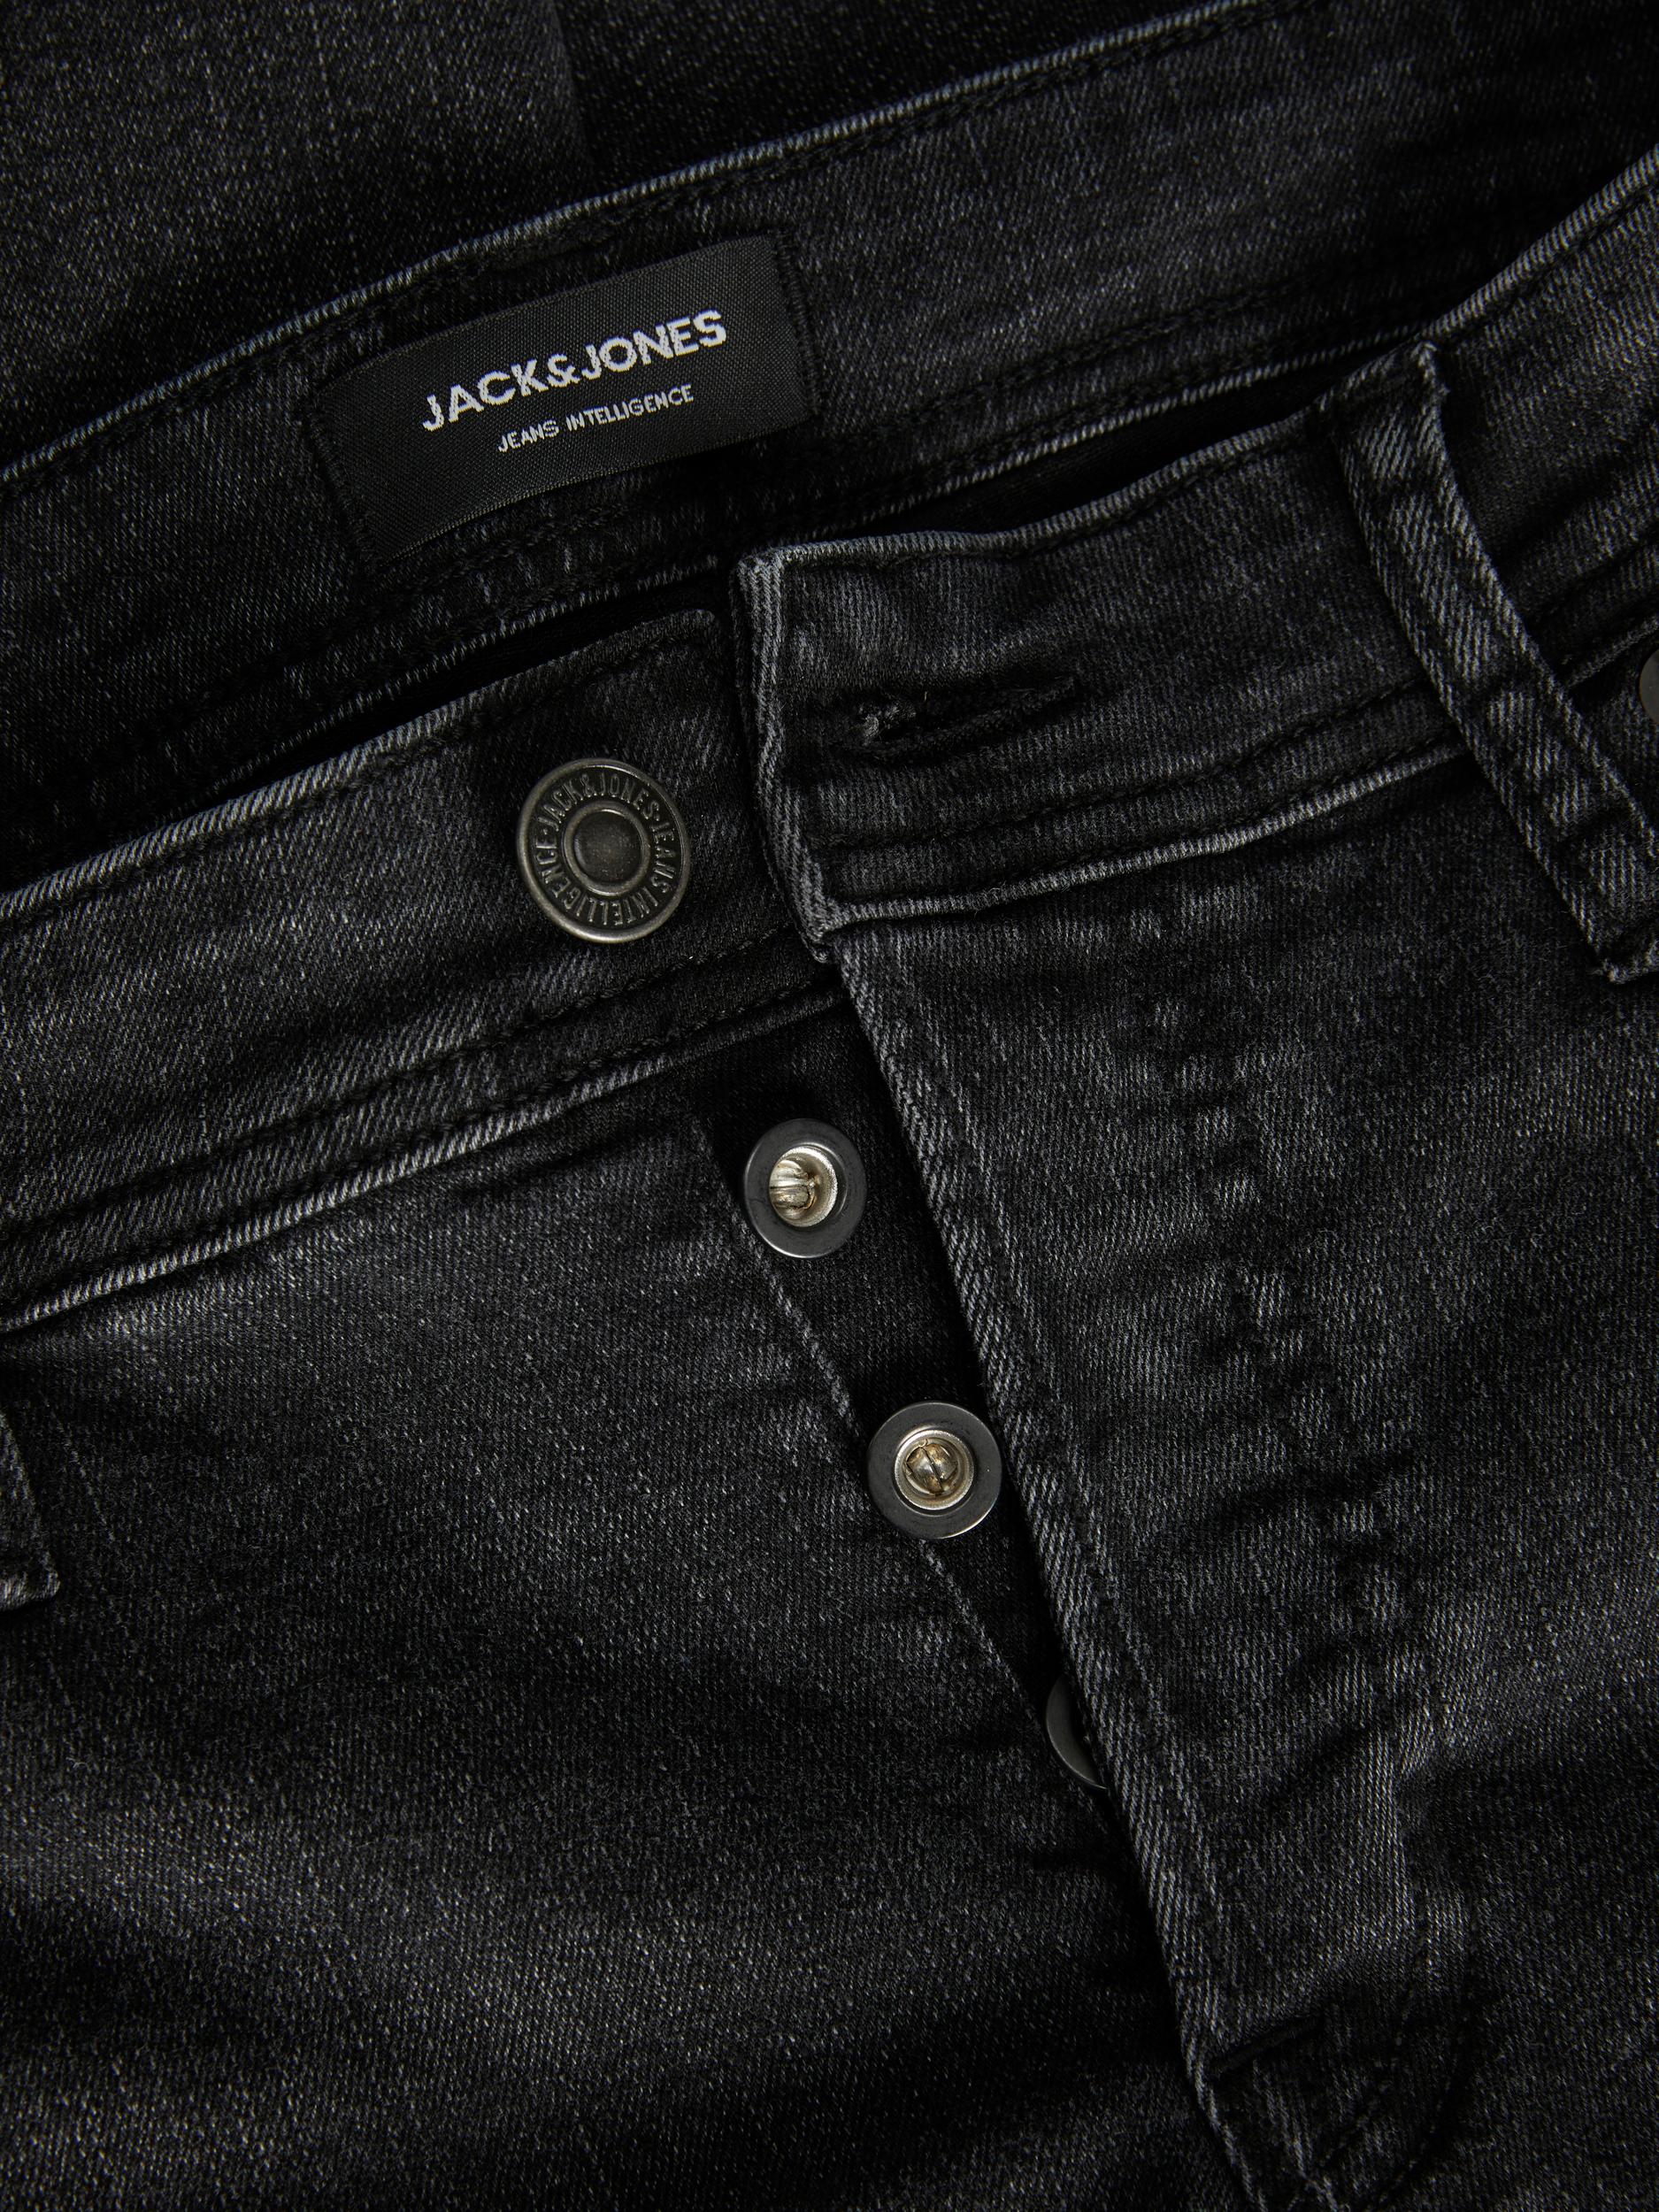 Jack & Jones Glenn Original MF 772 Slim Fit Jeans Black - Raw Menswear